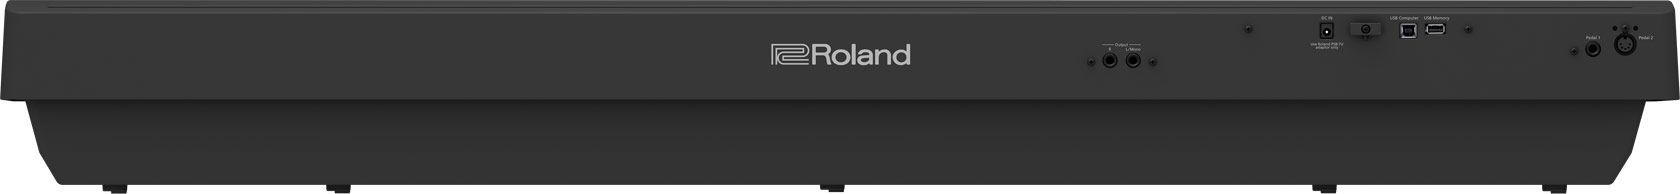 Roland FP-30X-BK Stagepiano schwarz Digitalpiano mit Lautsprechern FP30X BK